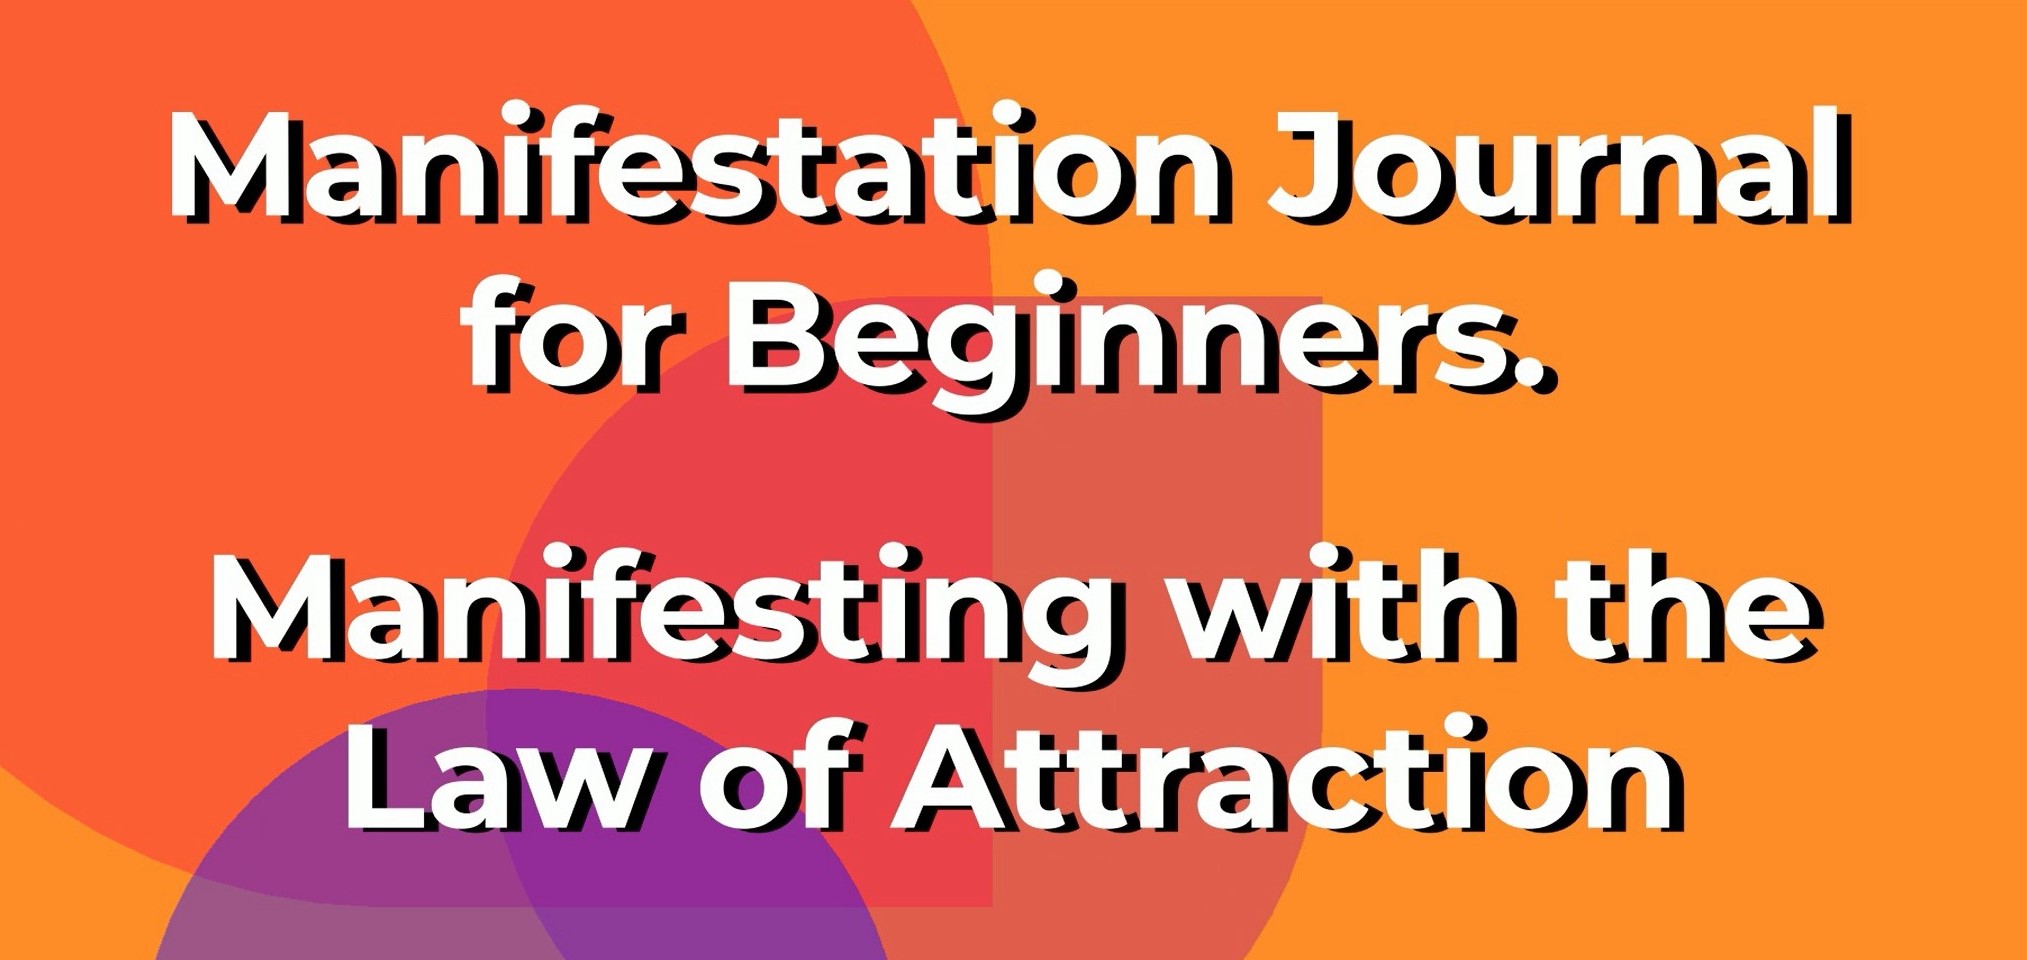 Manifestation Journal for Beginners